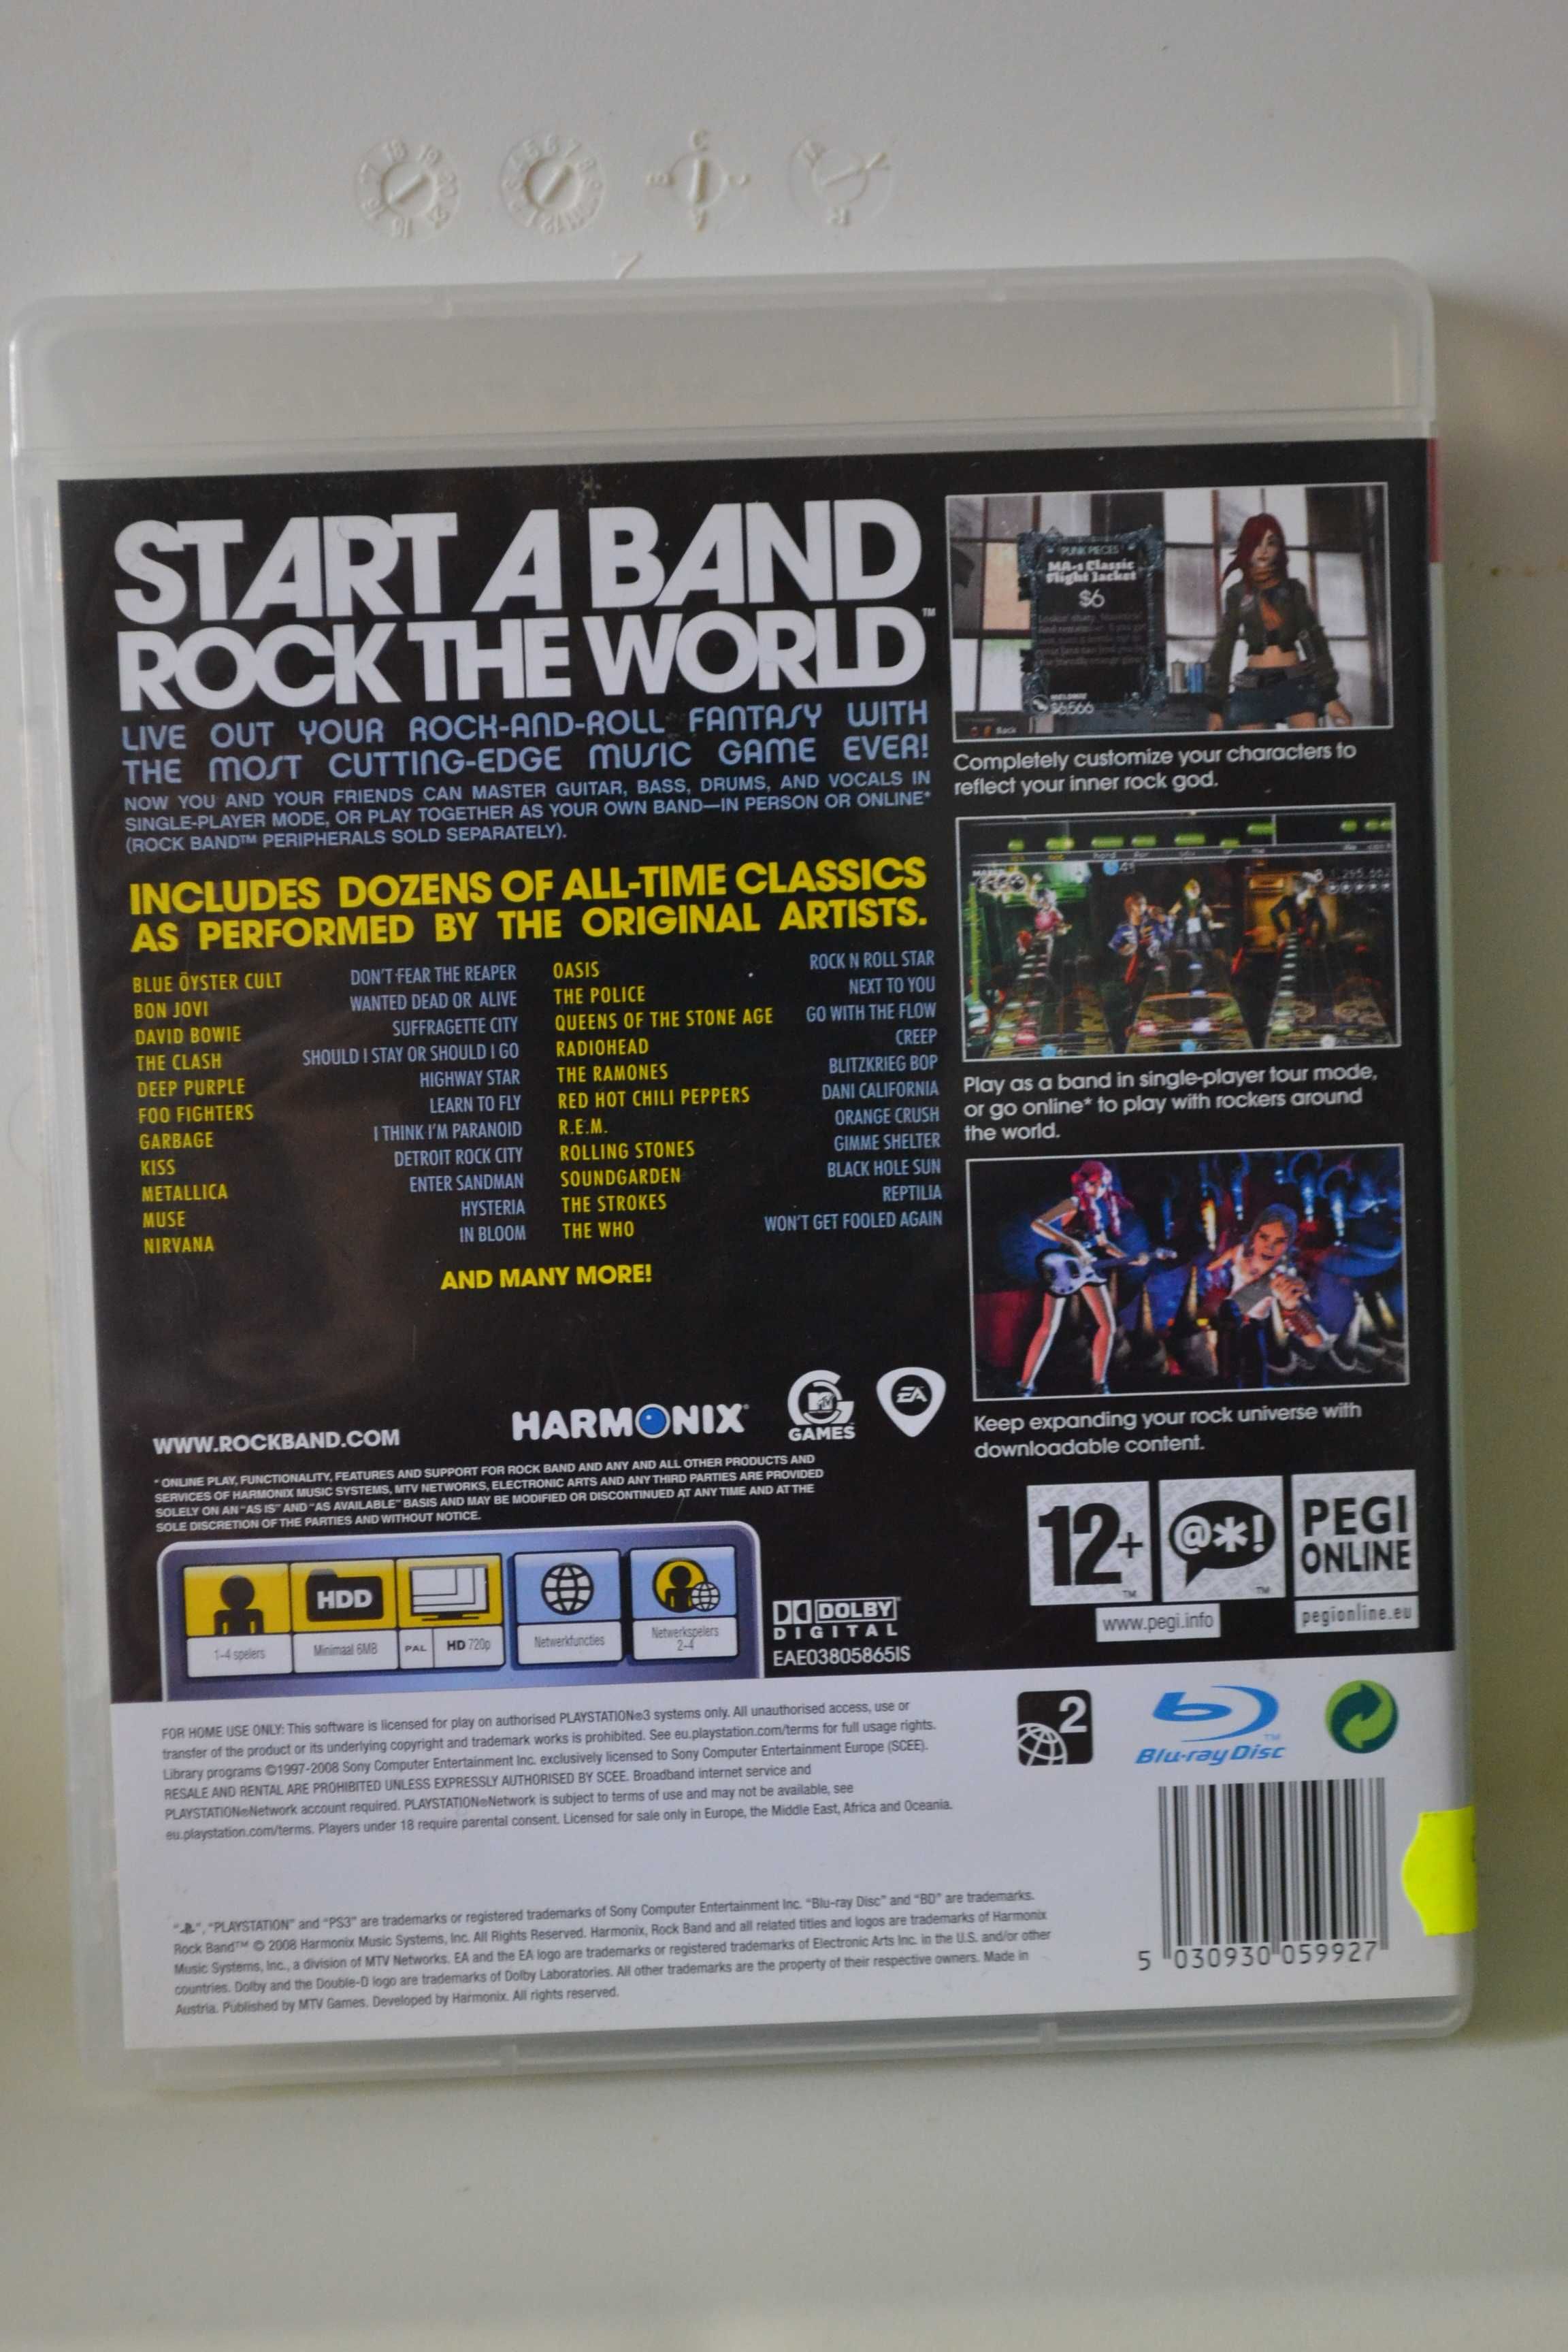 Rock Band  Playstation 3